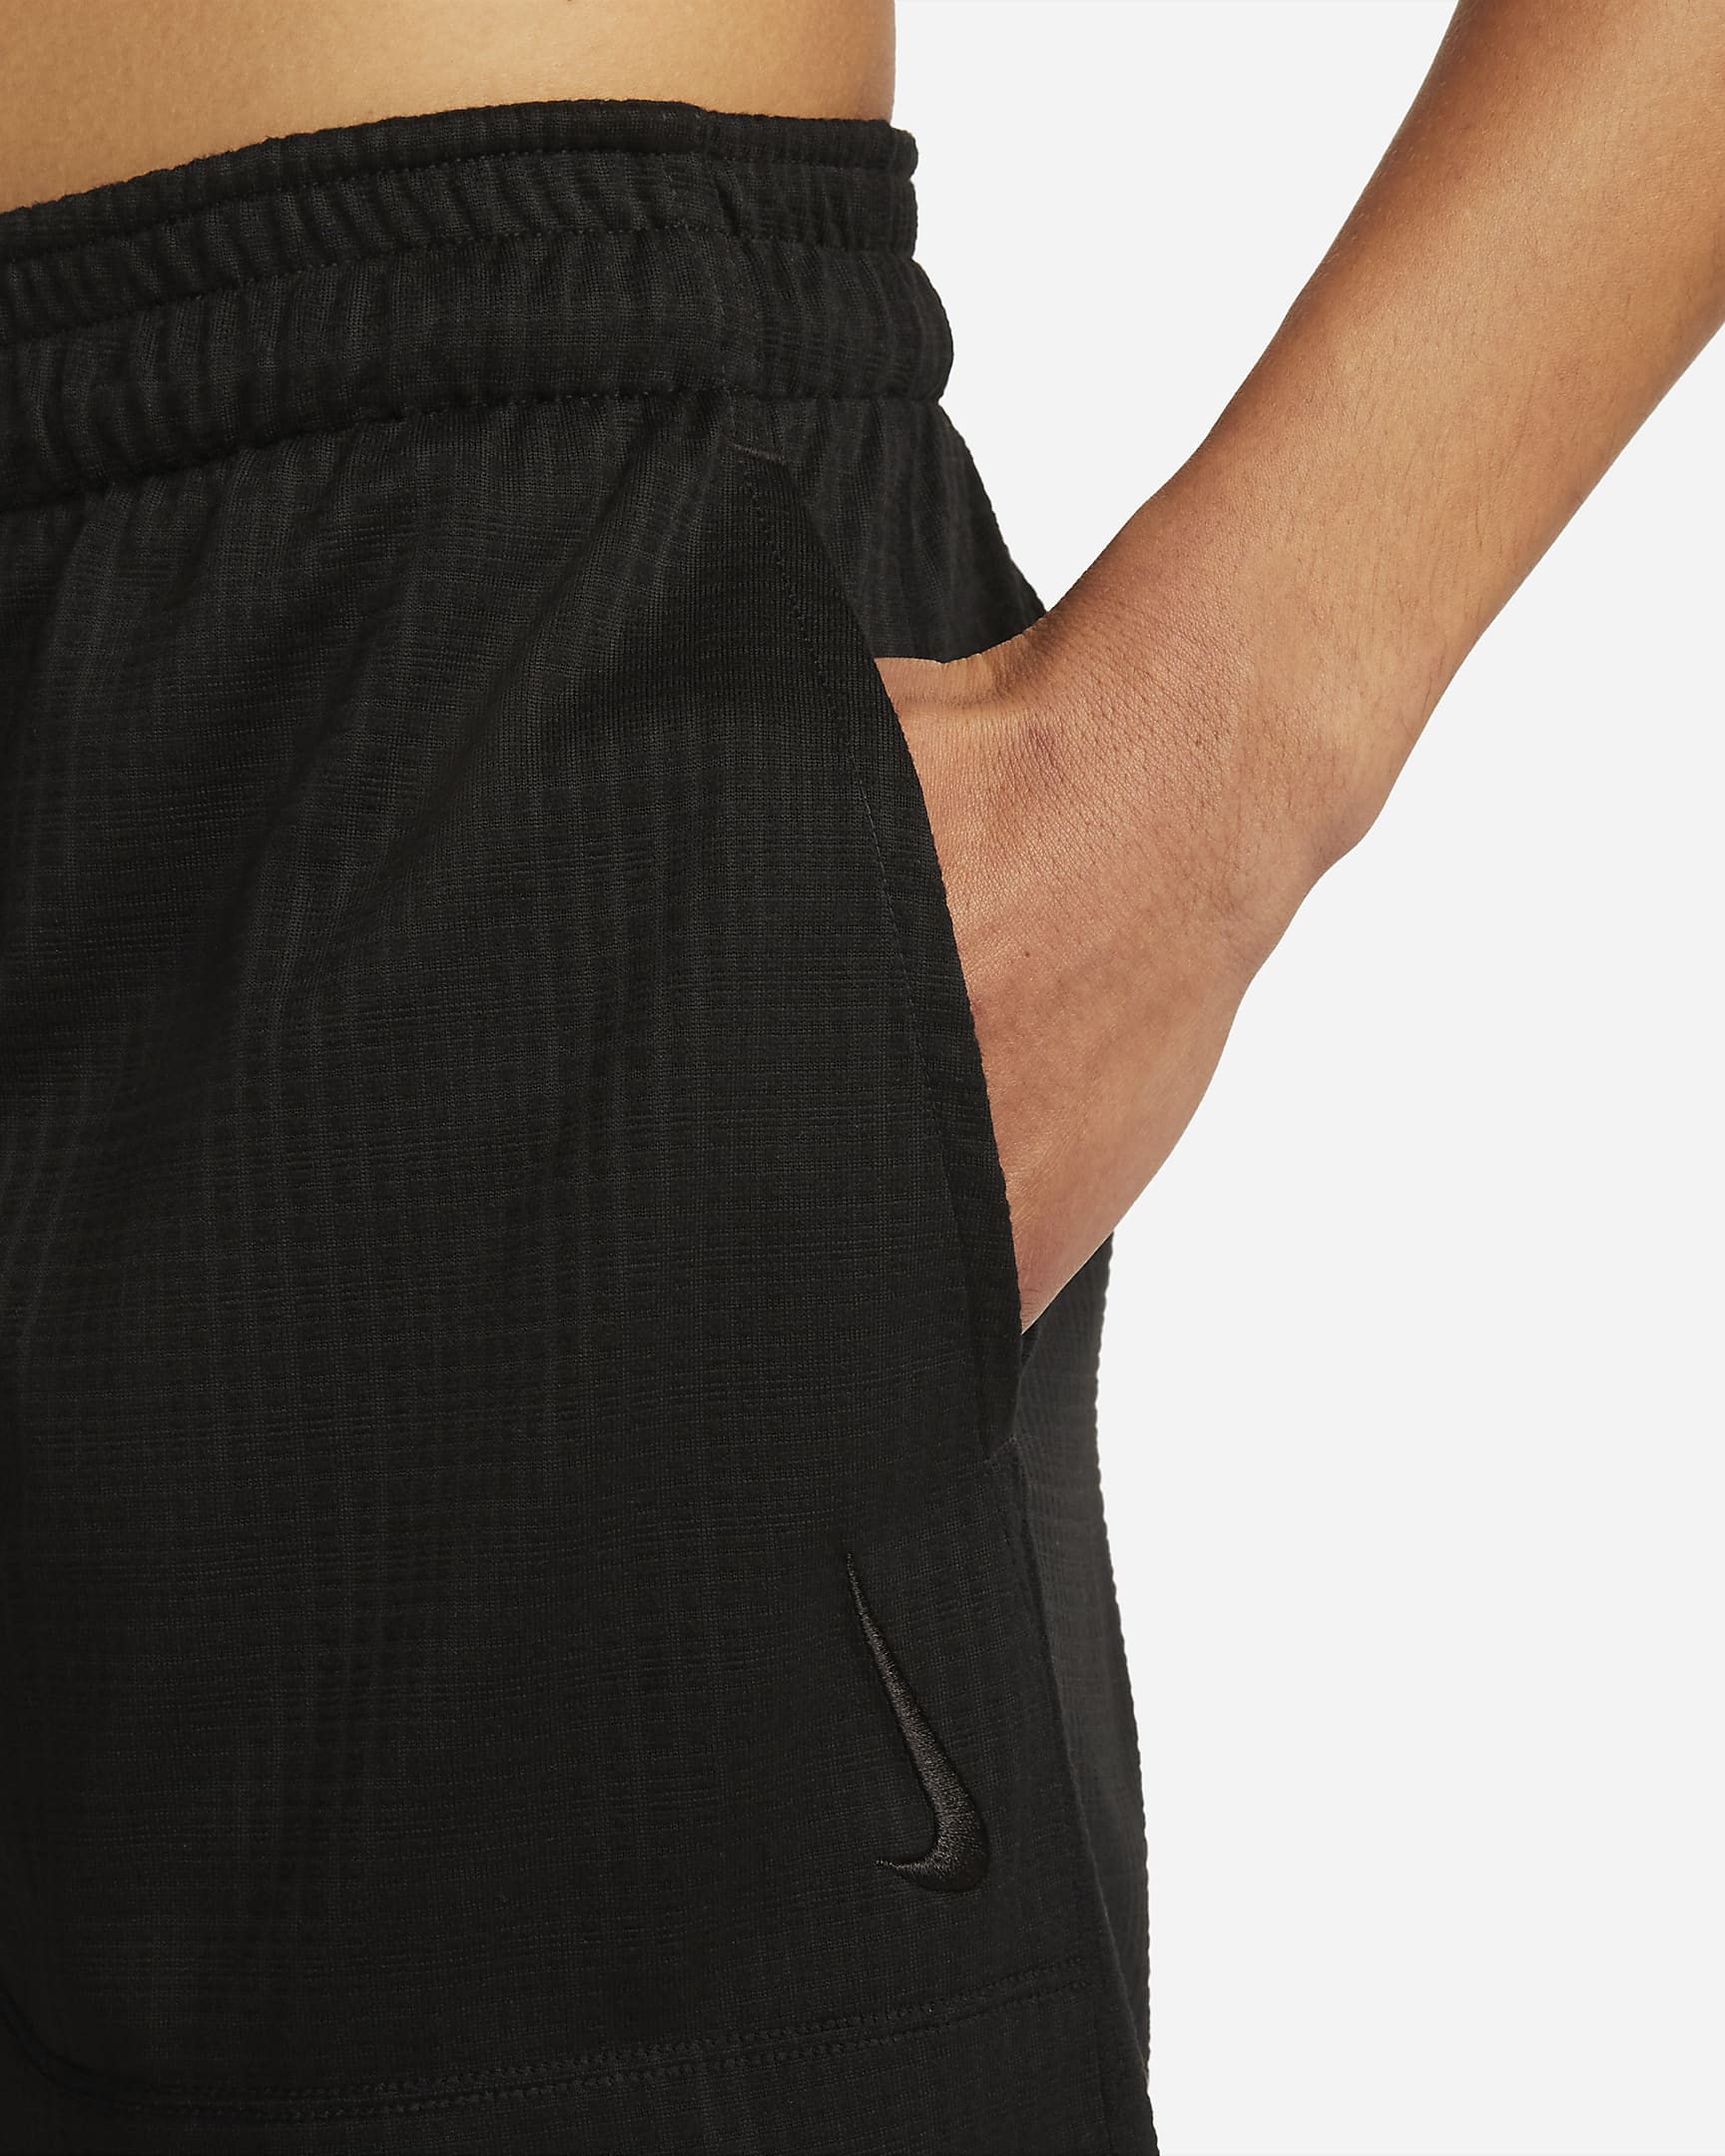 Ofodrade shorts Nike Yoga Dri-FIT 13 cm för män - Svart/Svart